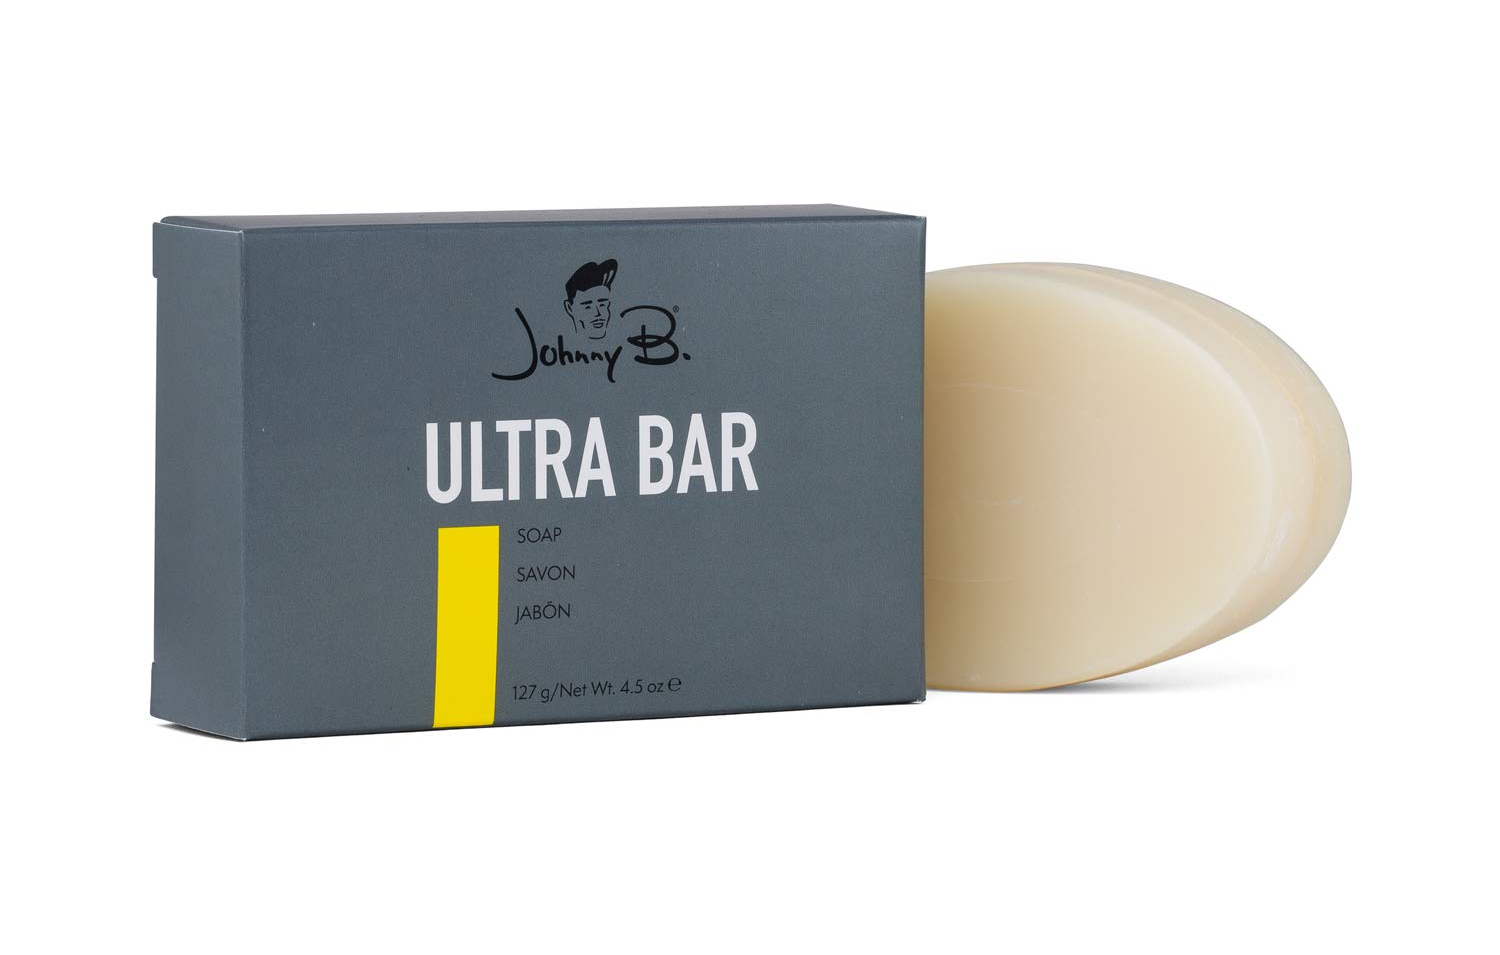 Johnny B. Ultra Clean Soap Bar, 4.5 Oz. - $10.95